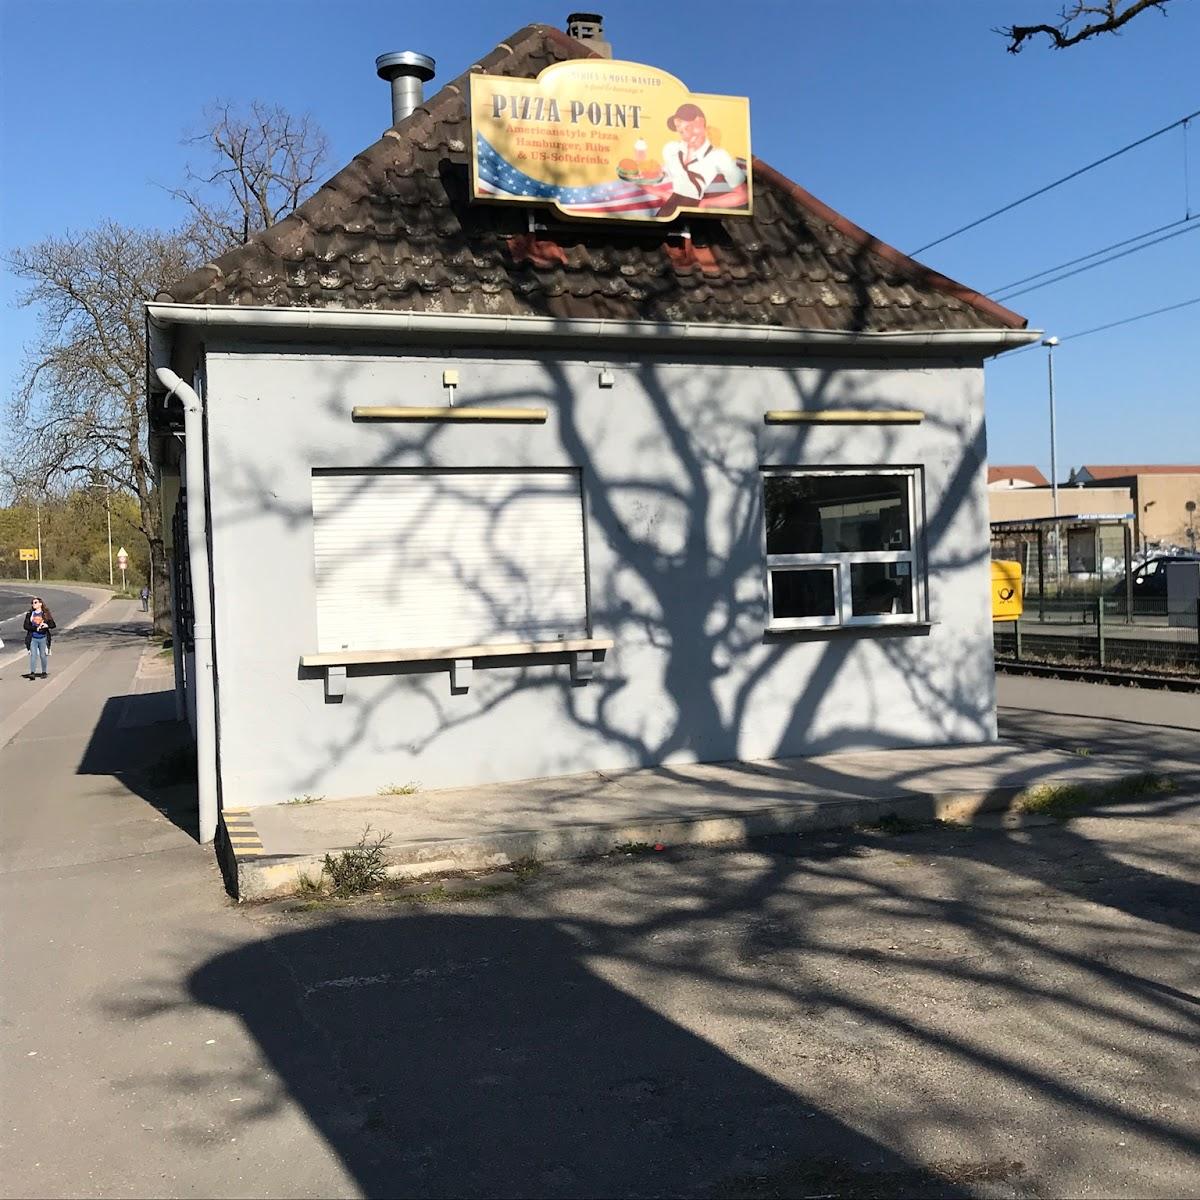 Restaurant "Pizza Point" in Mannheim